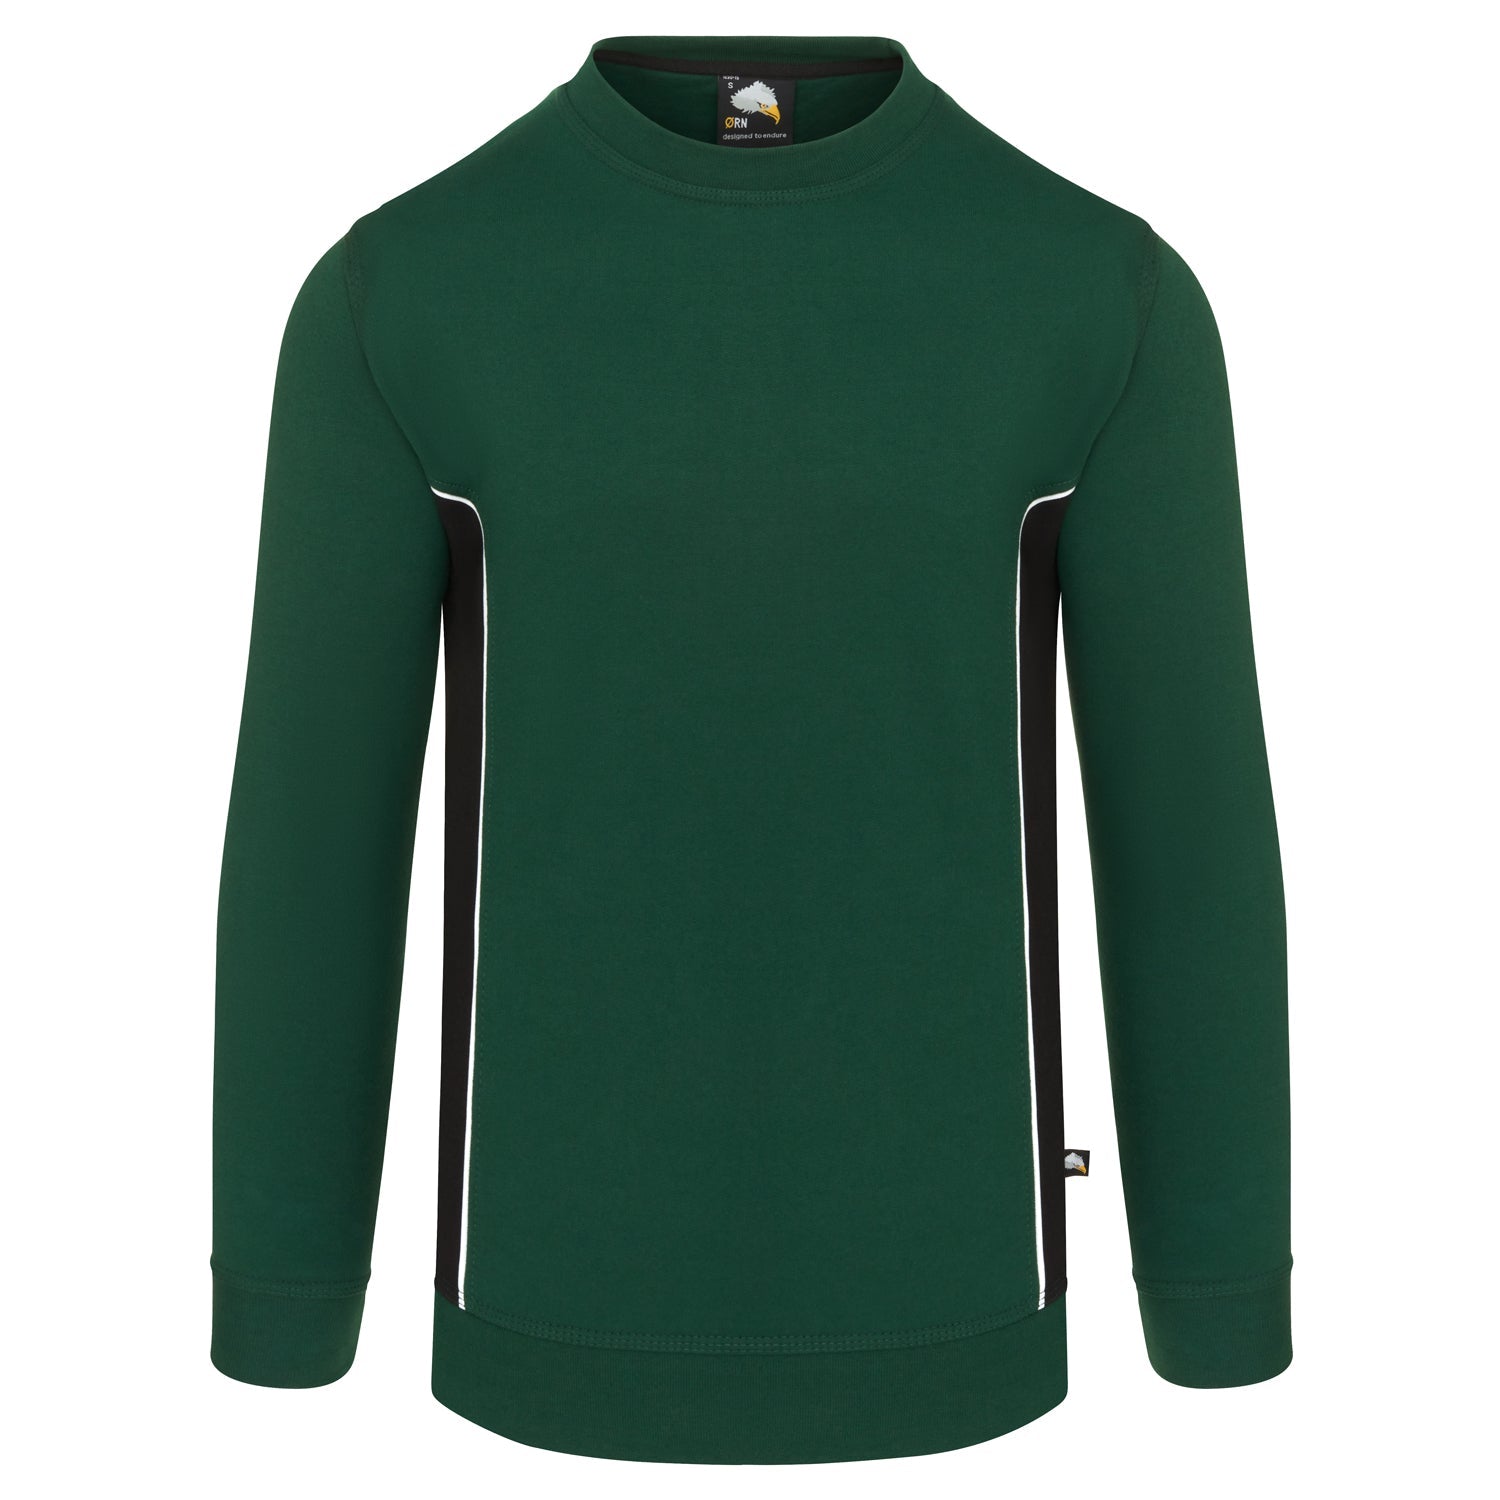 ORN Silverswift Two Tone Workwear Sweatshirt - Bottle Green/Black